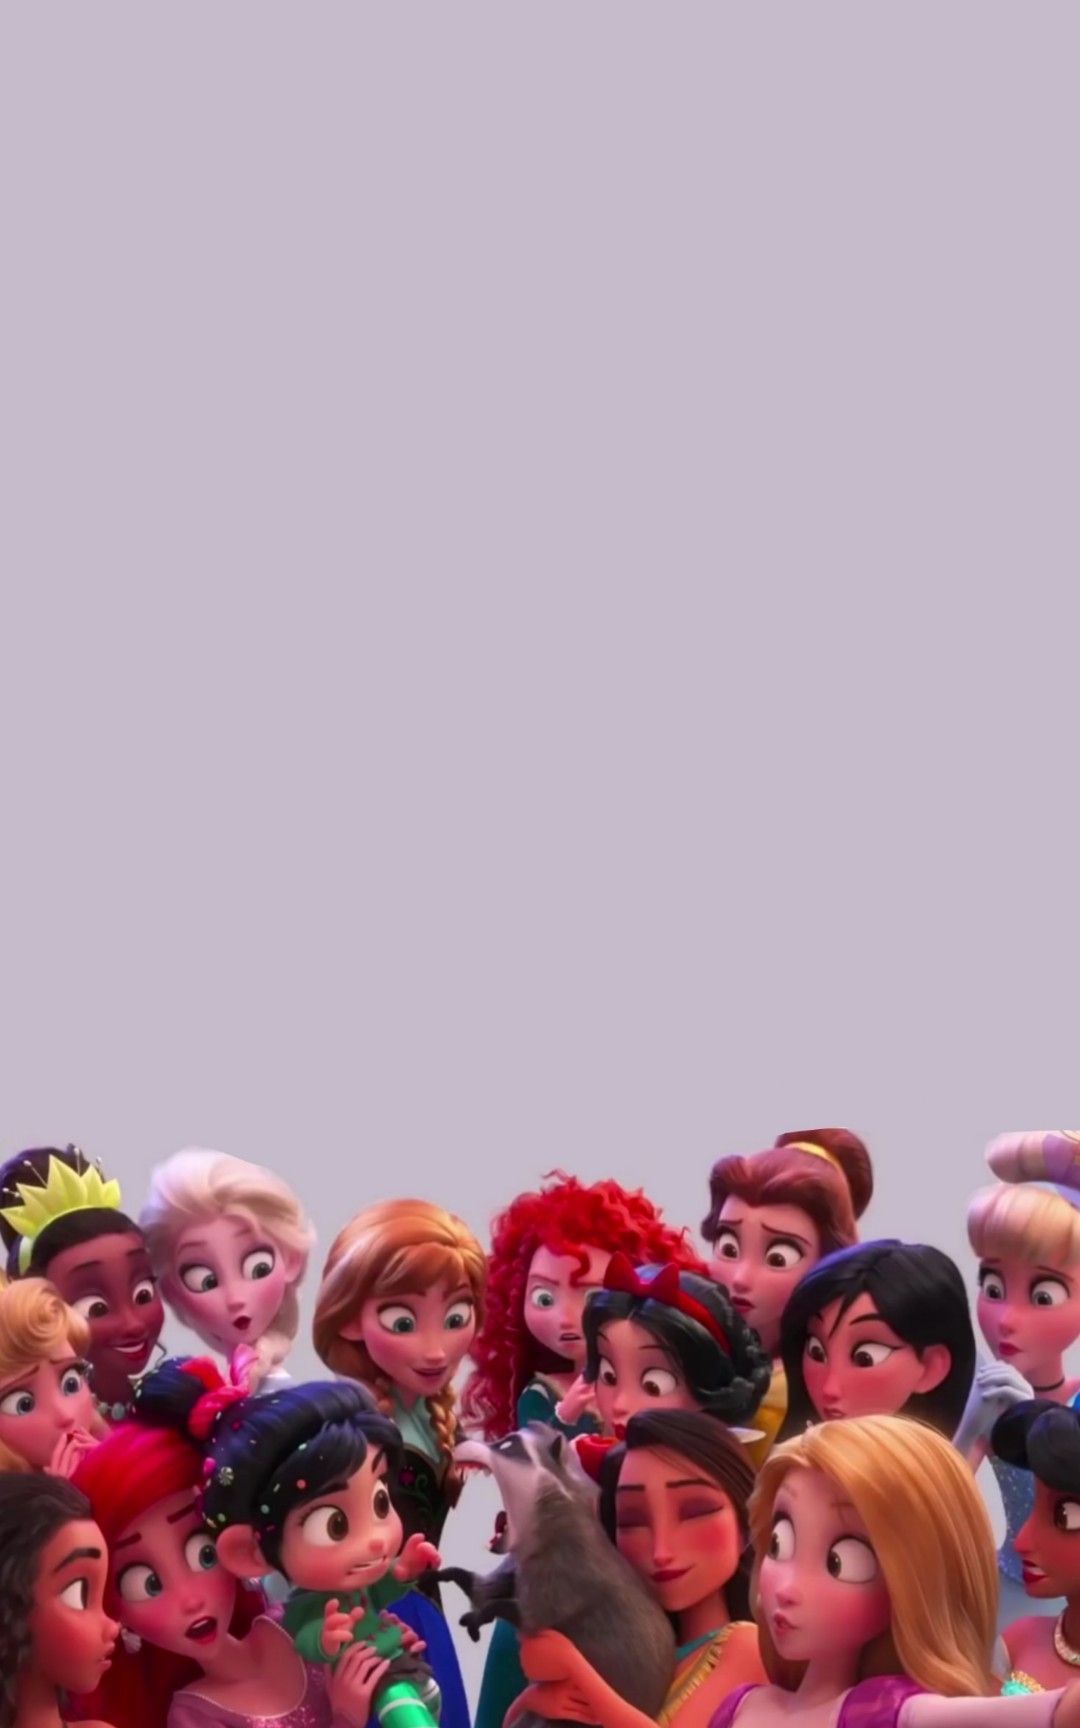 Disney Princess Phone Wallpapers - Wallpaper Cave